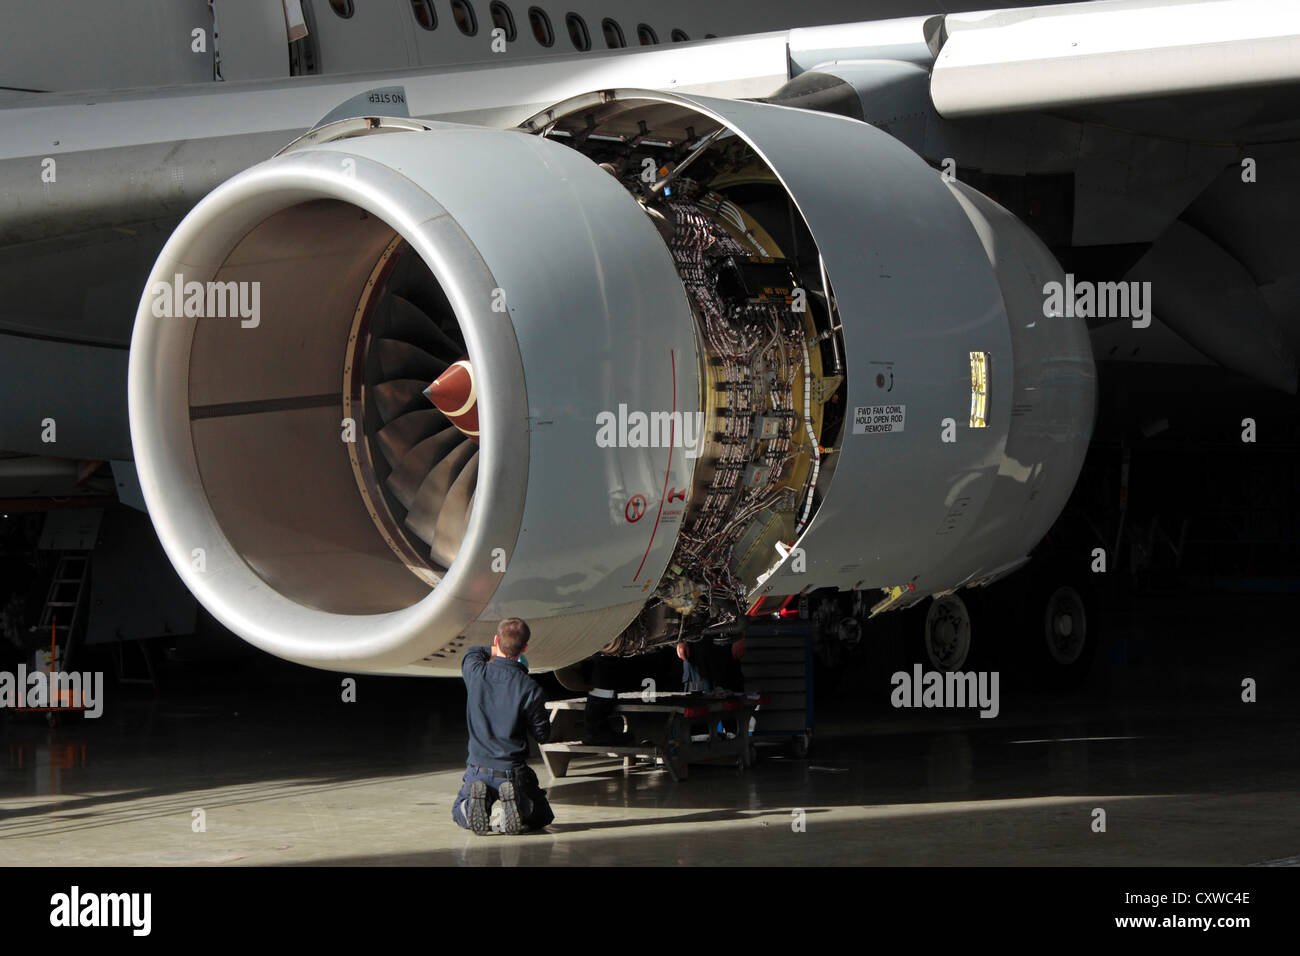 Ein Techniker führt die Wartung eines Rolls-Royce Trent 500 Flugzeuge Jet Engine. Aviation Engineering, Knowledge Worker, qualifizierte Arbeitskräfte. Stockfoto